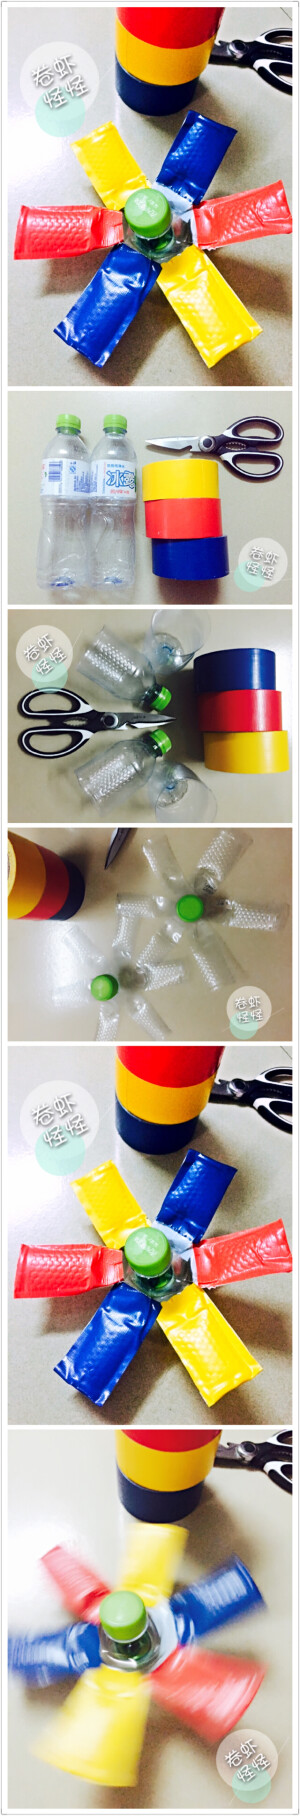 #废物利用#矿泉水空瓶制作的彩色陀螺 旋转陀螺。孩子玩具